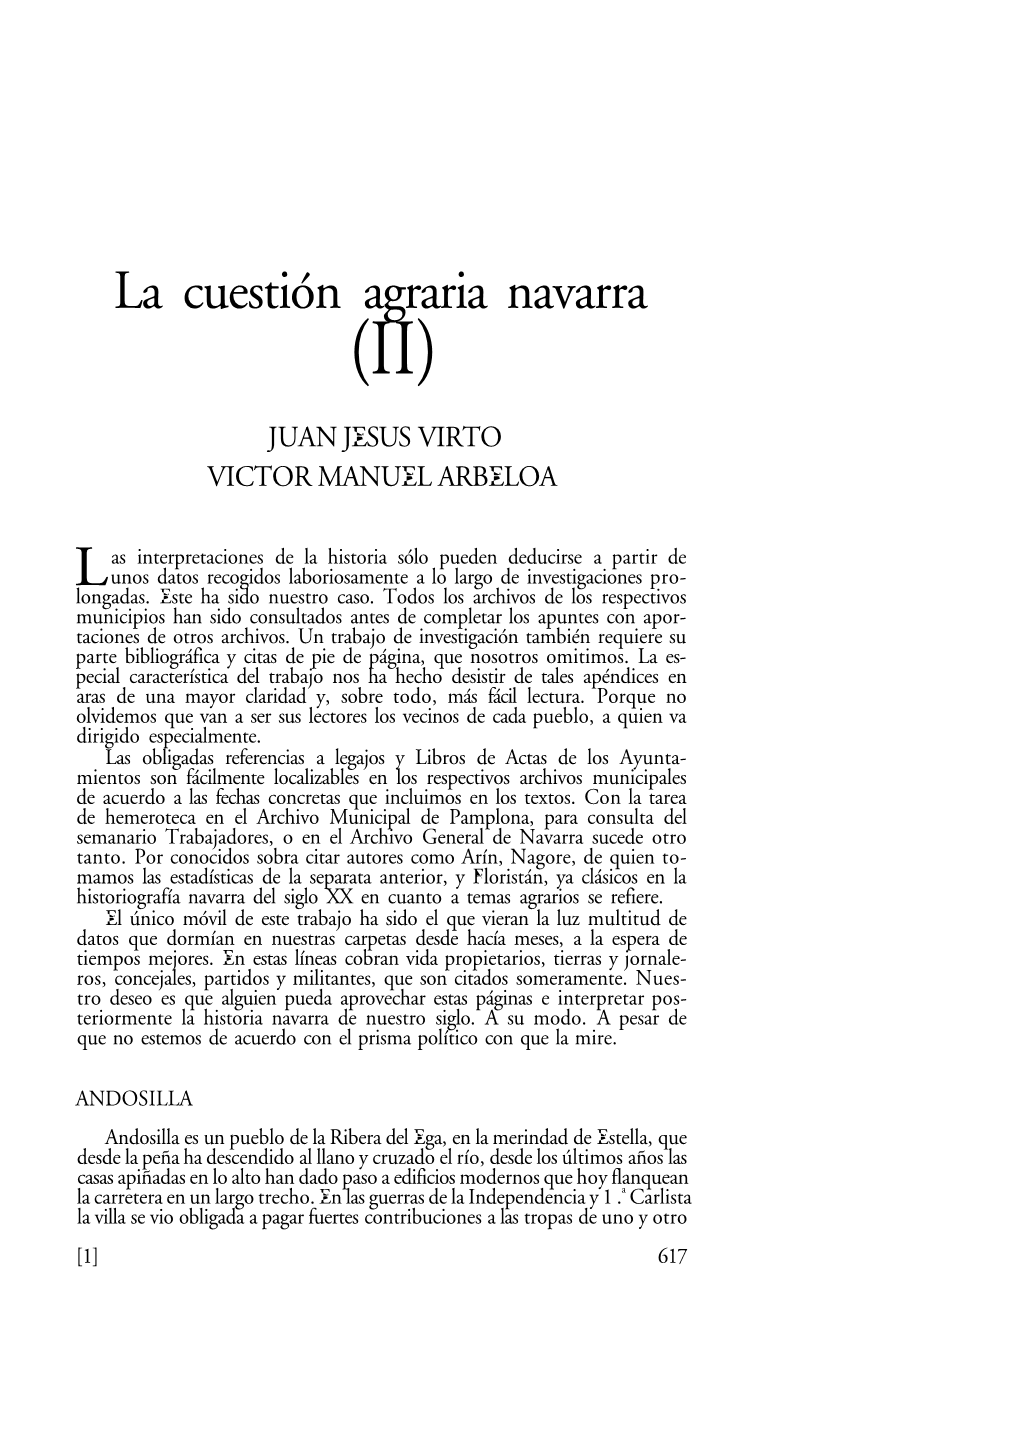 La Cuestión Agraria Navarra (II)